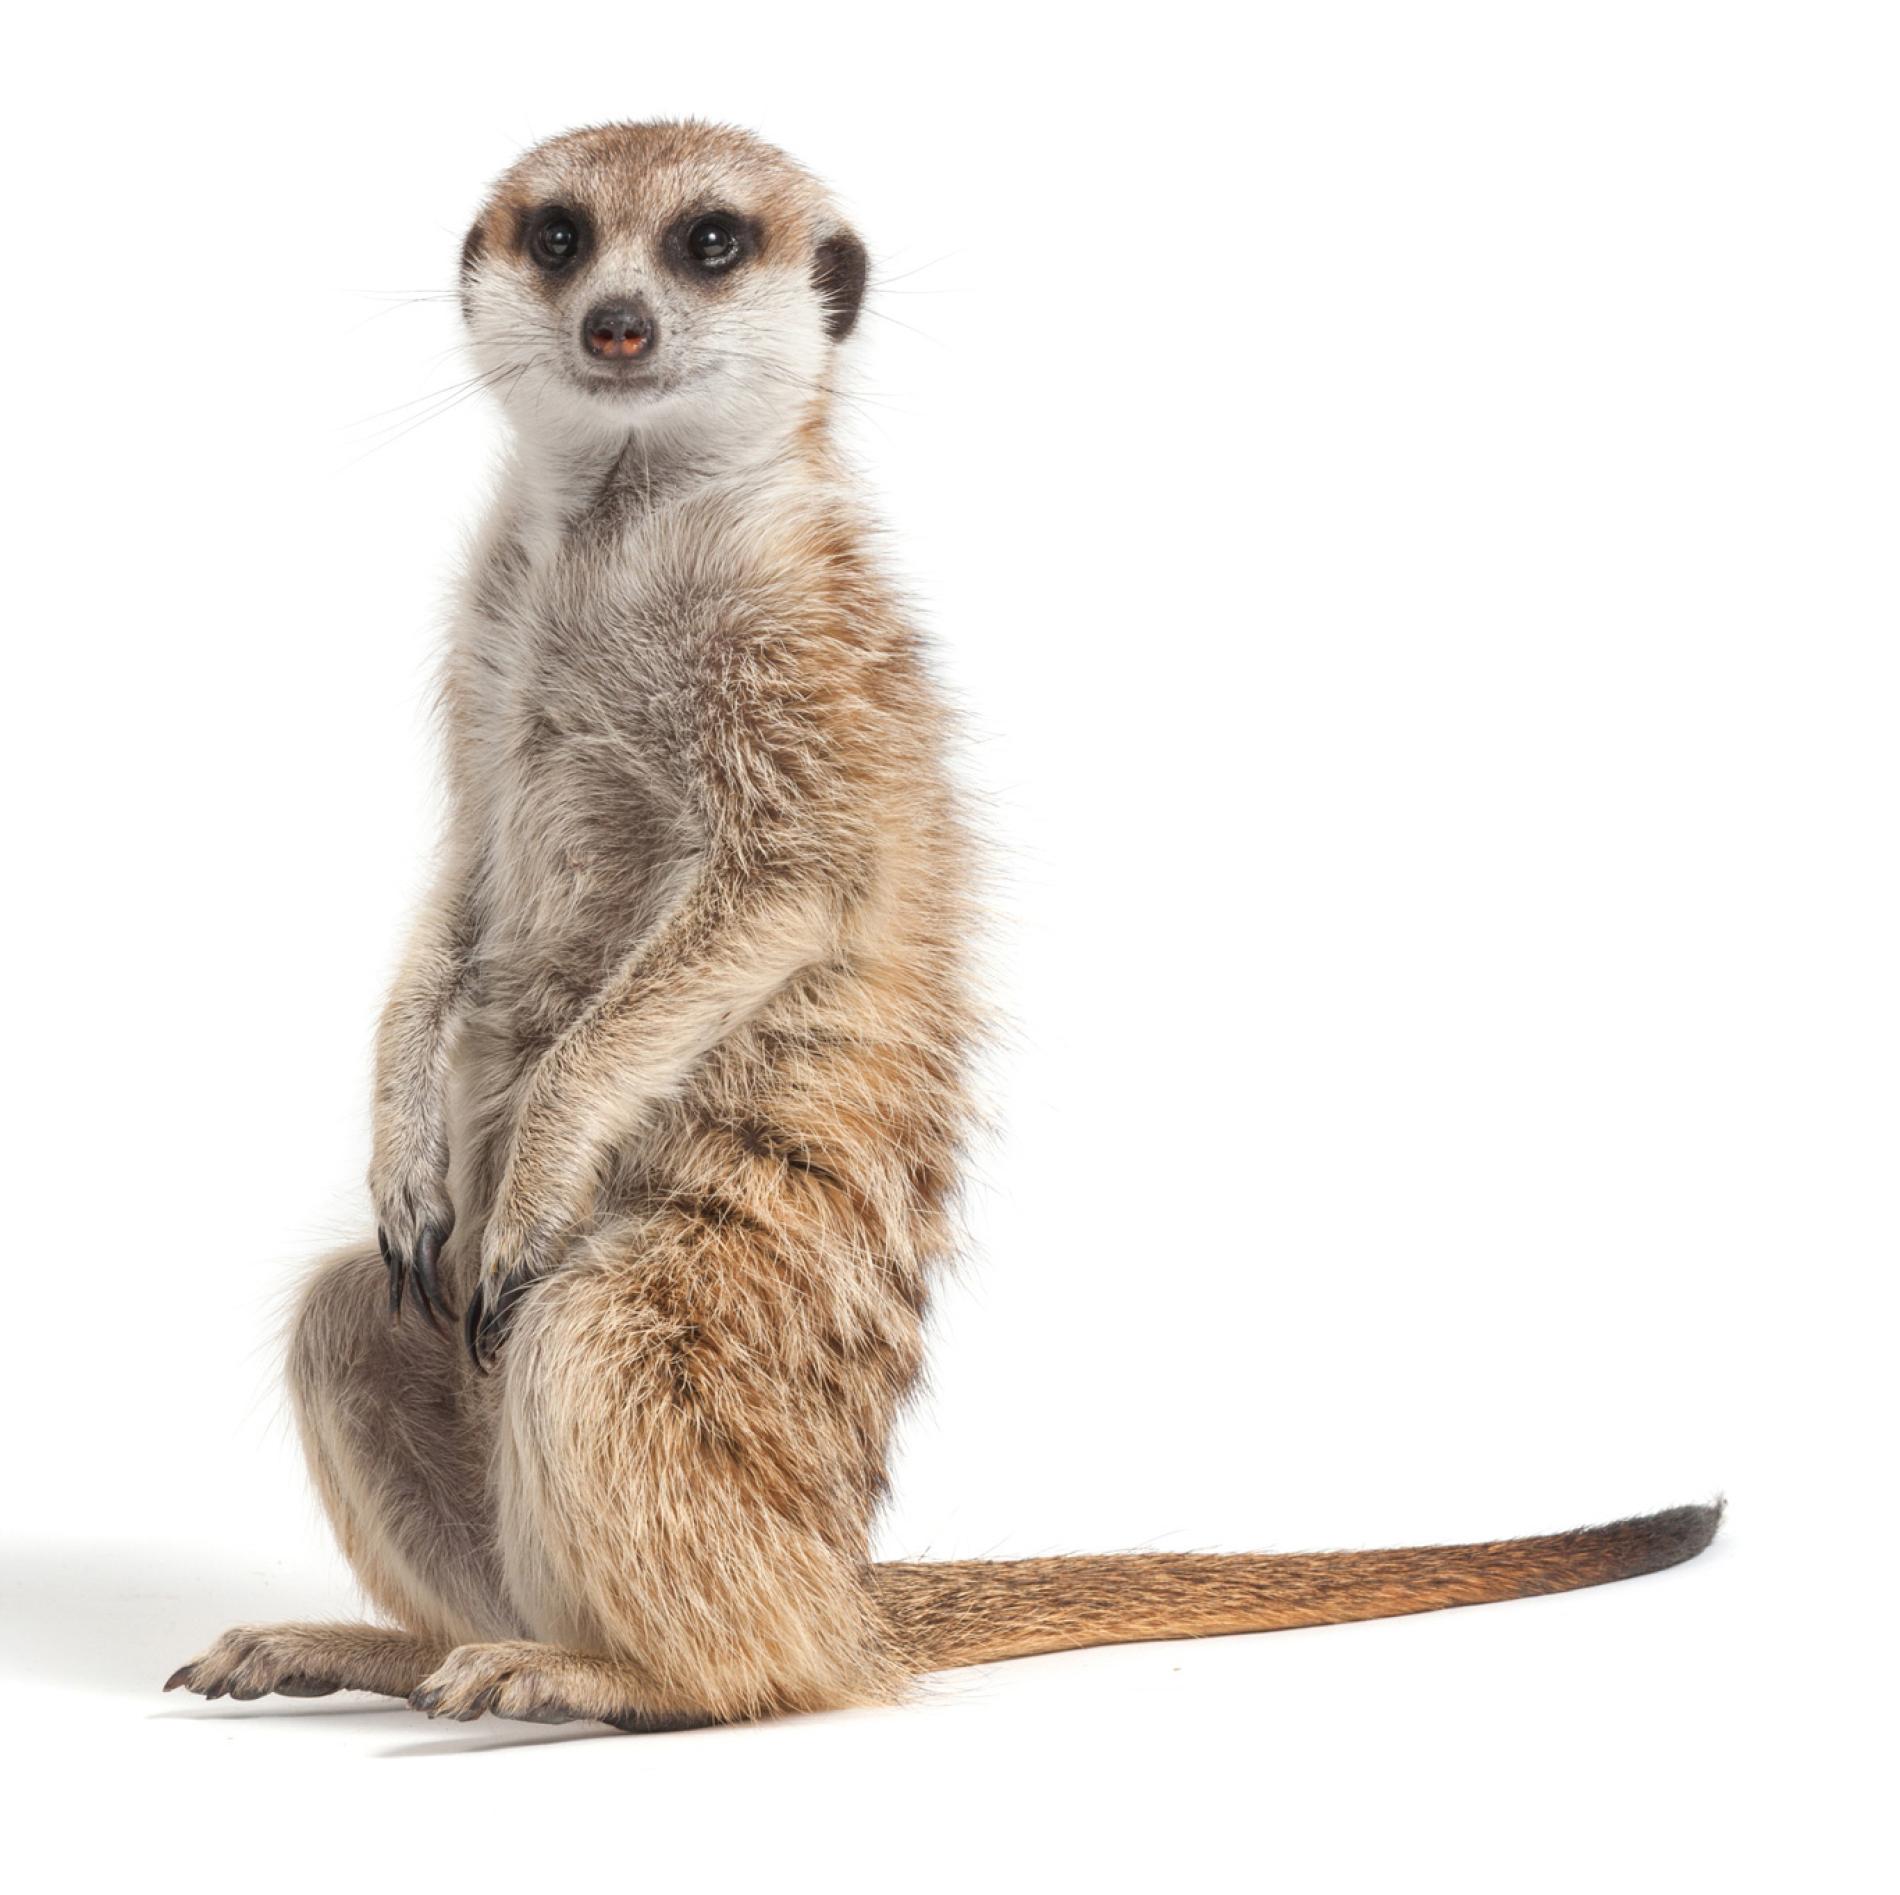 When Meerkats Choose Who Has Sex, Heft Helps